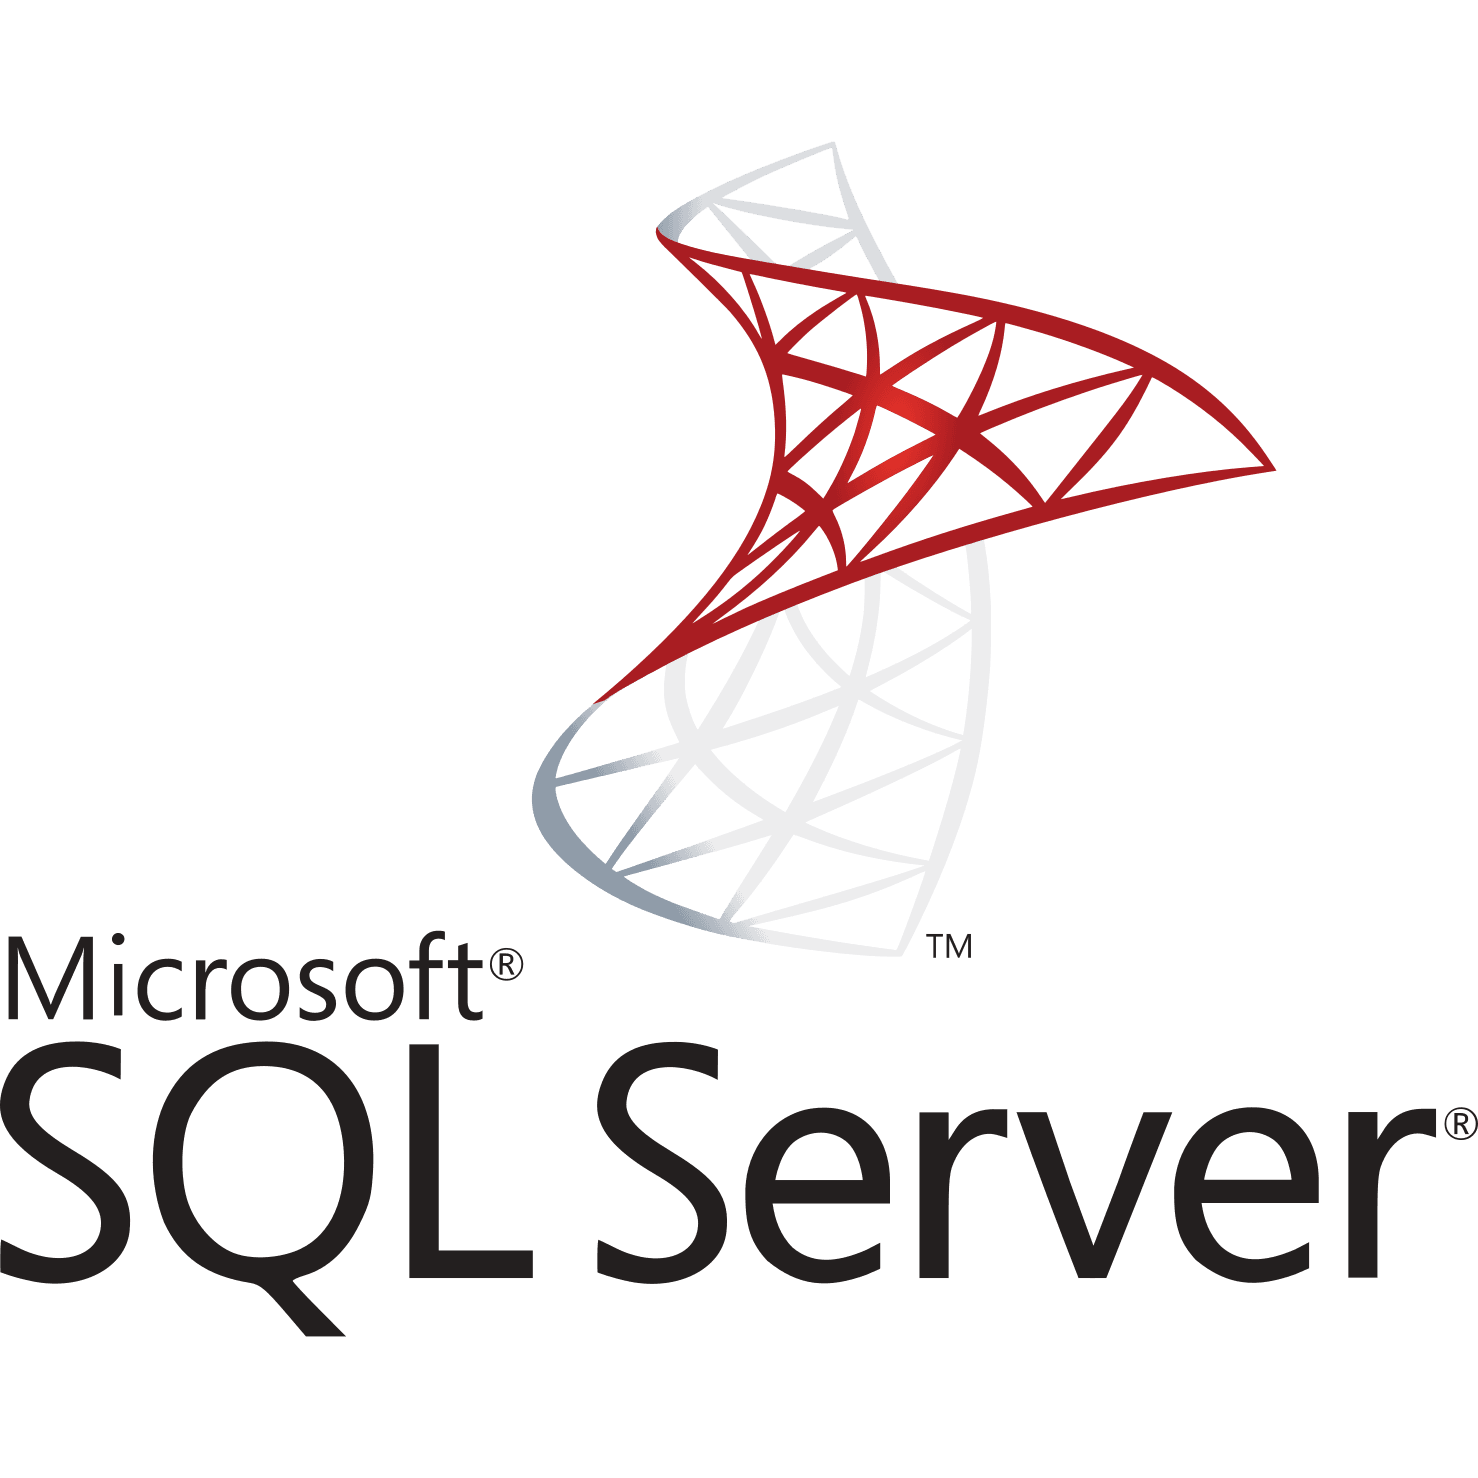 Microsoft sql server